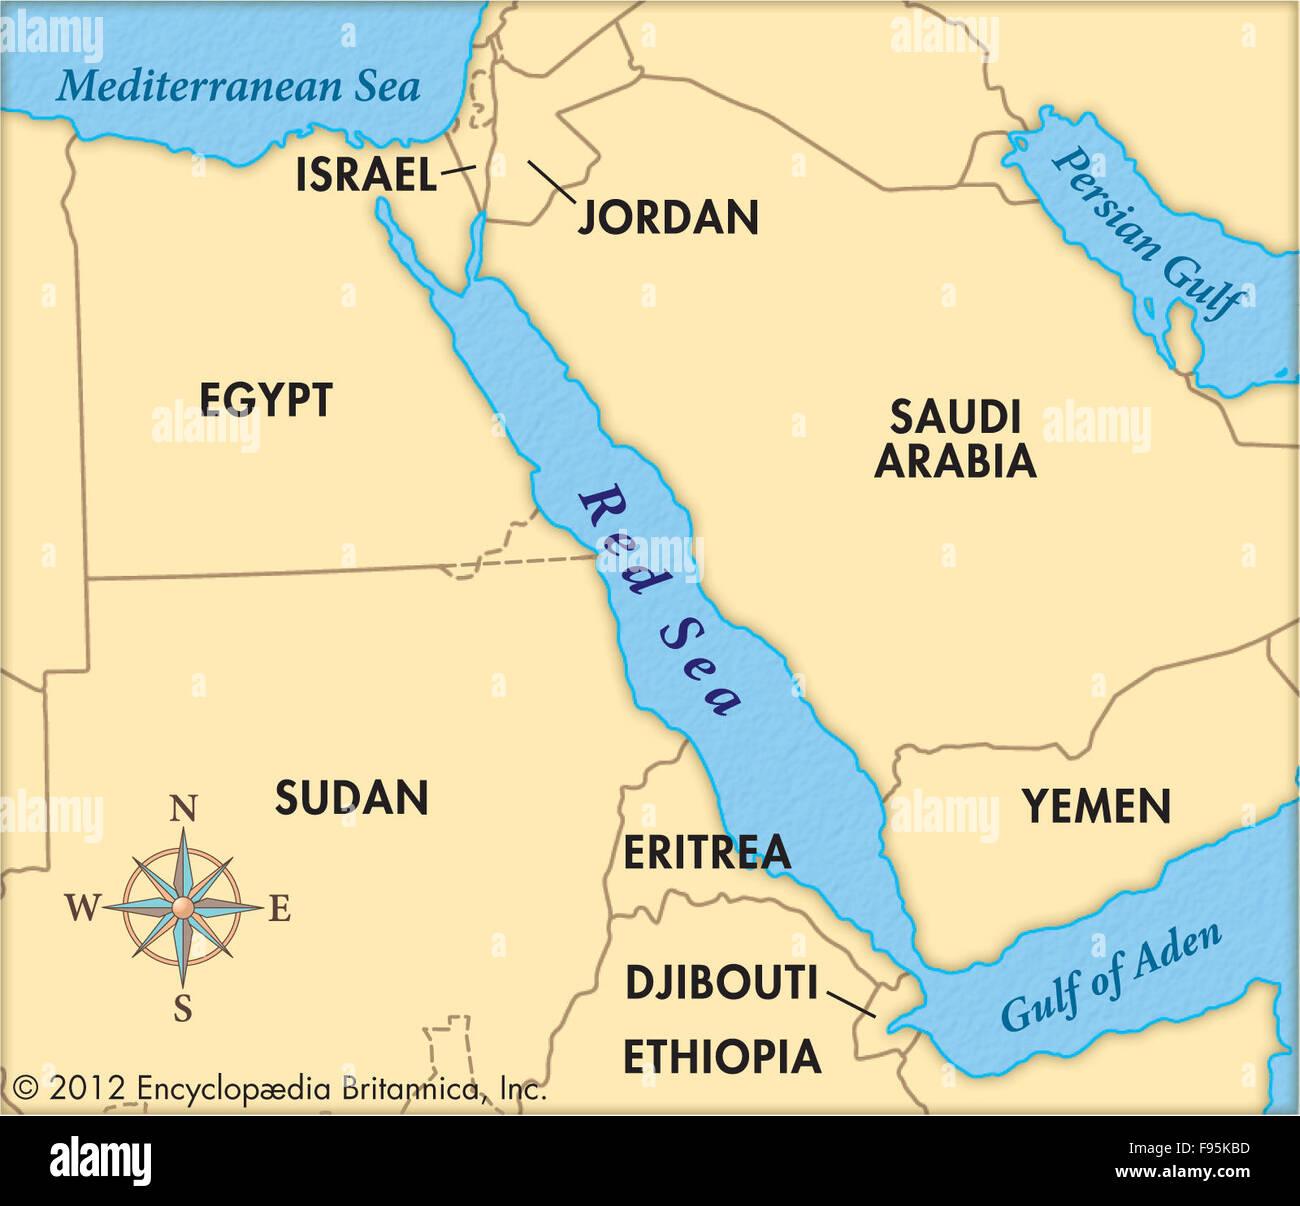 L’alliance maritime en mer Rouge contre les Houthis